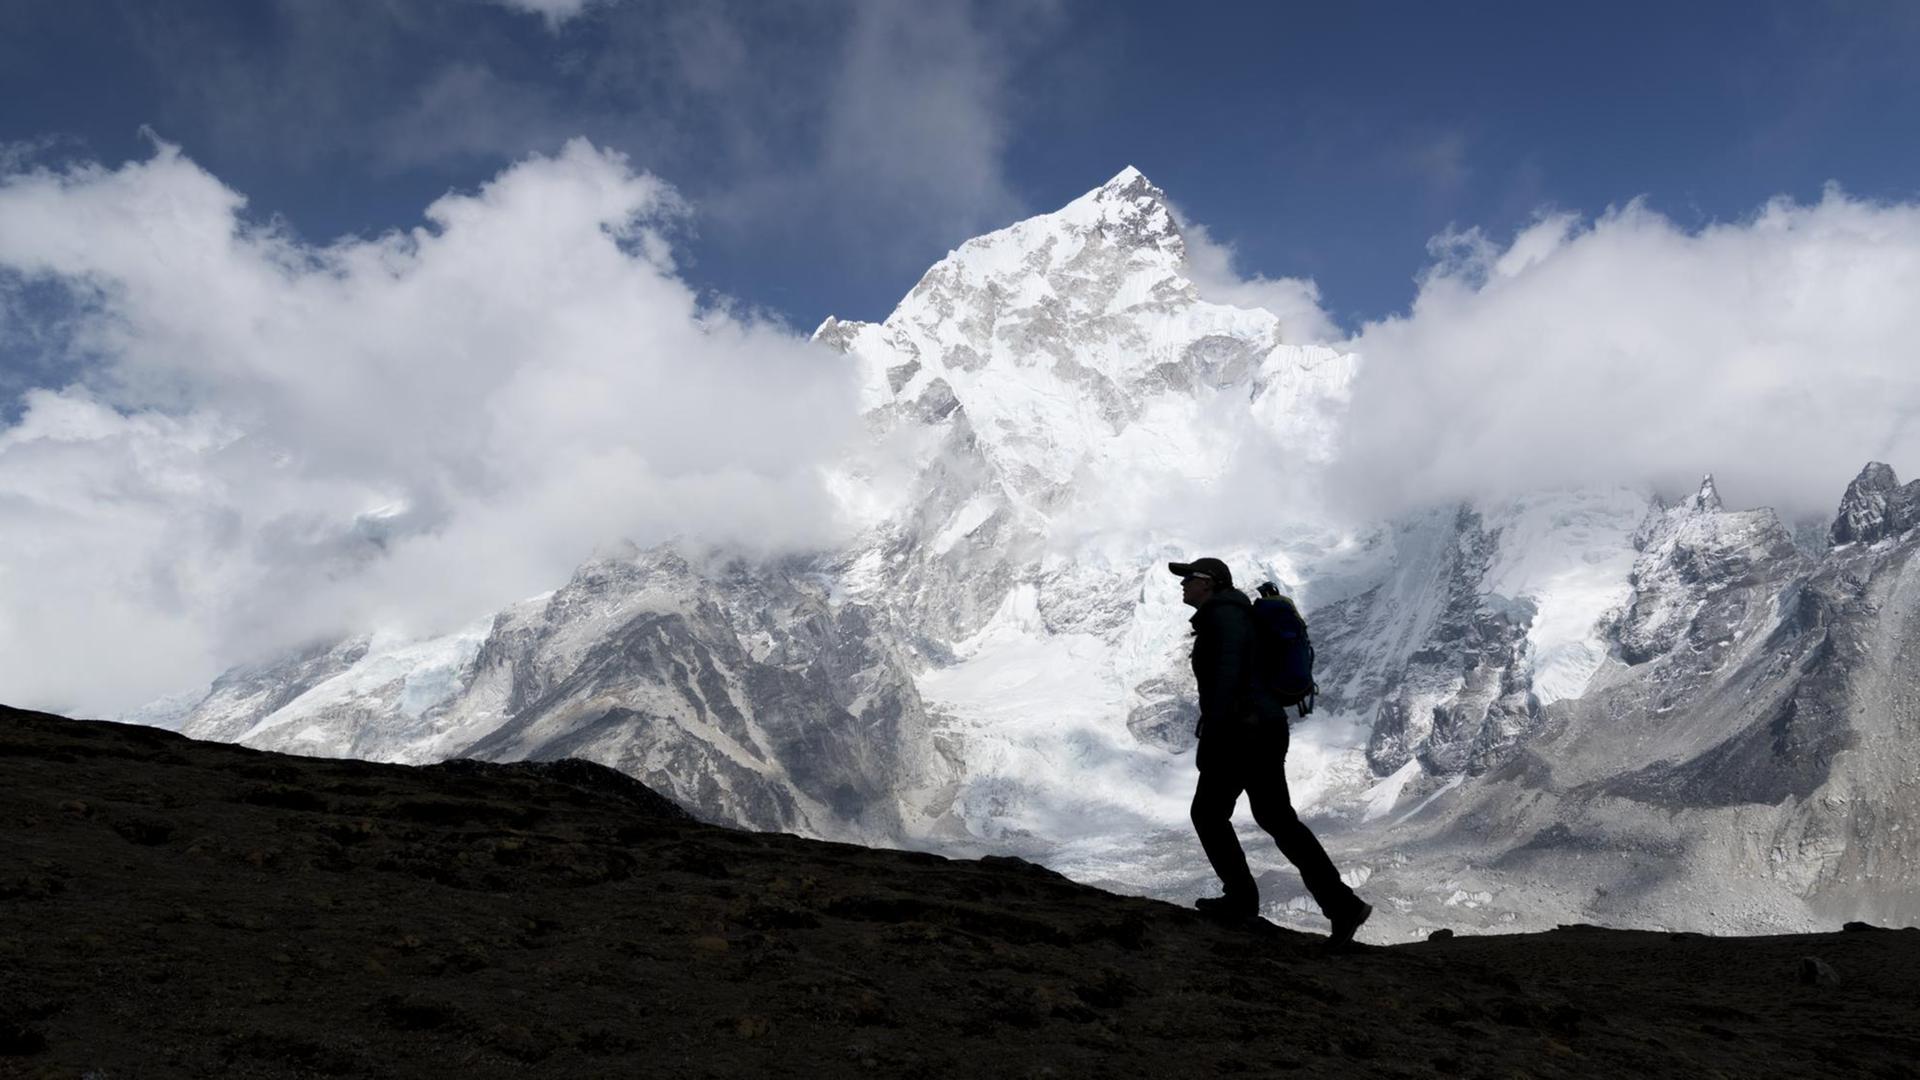 Im Vordergrund die Silhouette eines Bergsteigers, im Hintergrund der schneebedeckte Gipfel des Mount Everest